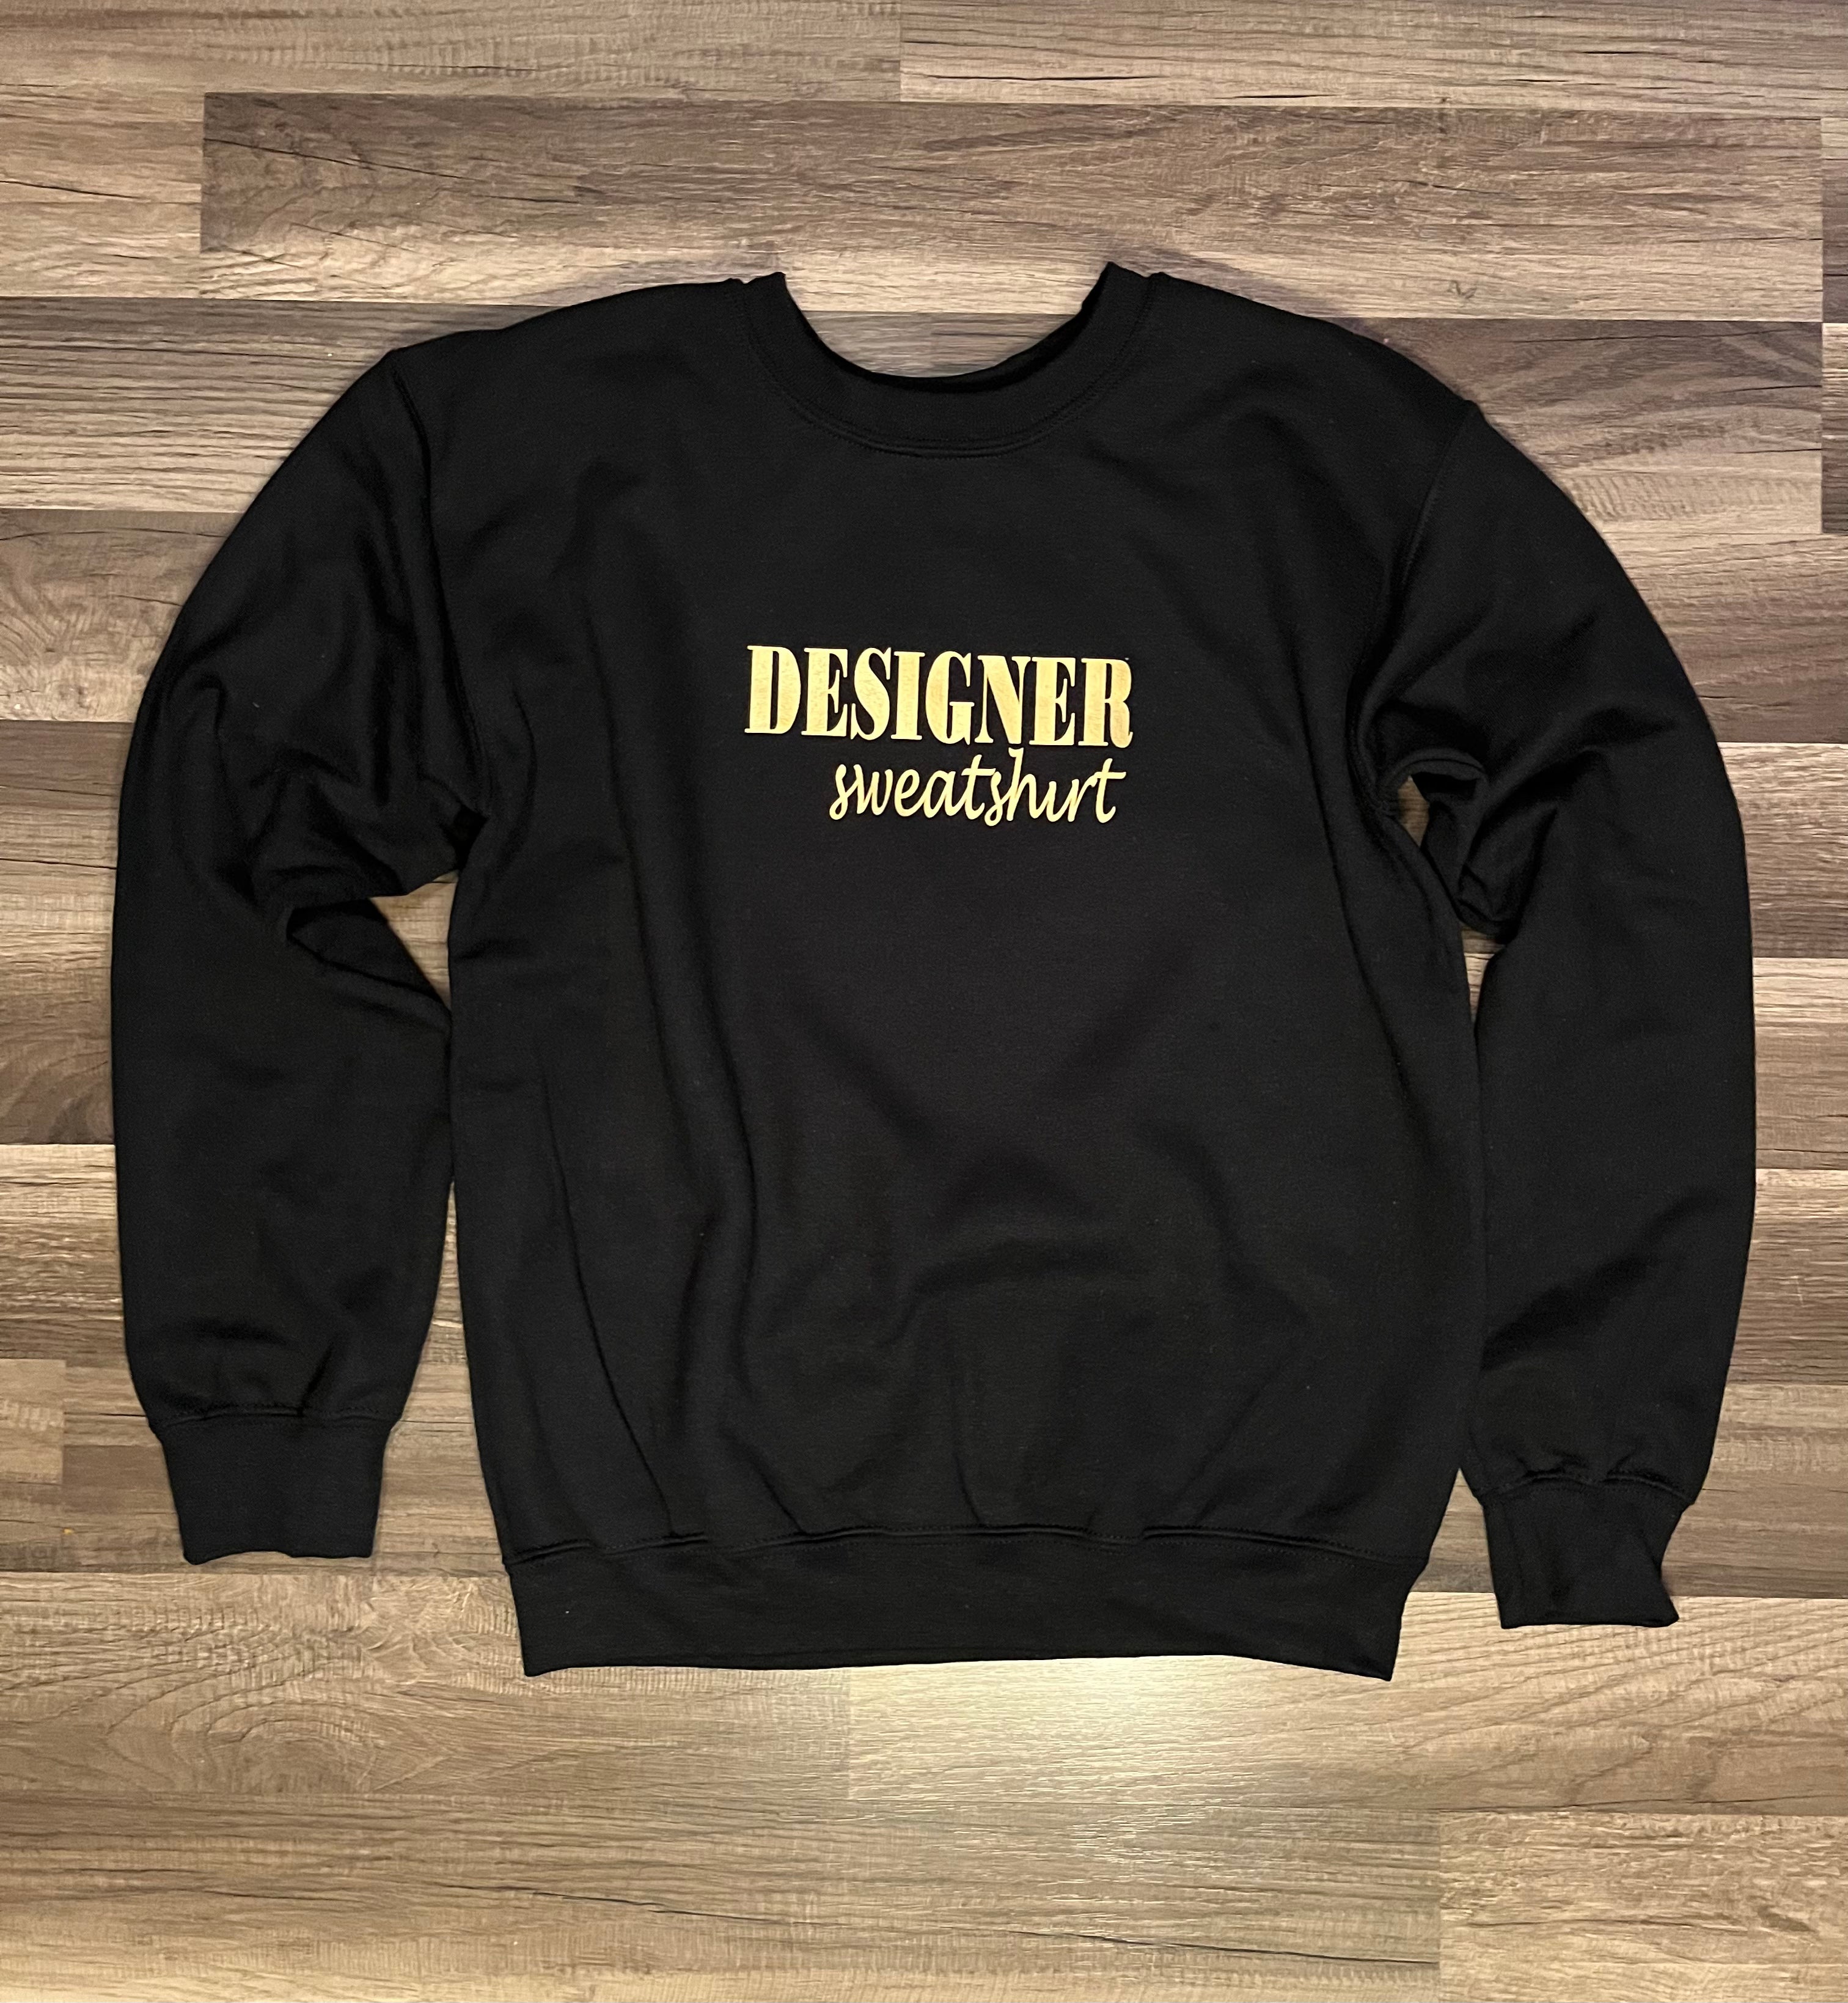 Designer sweatshirts.